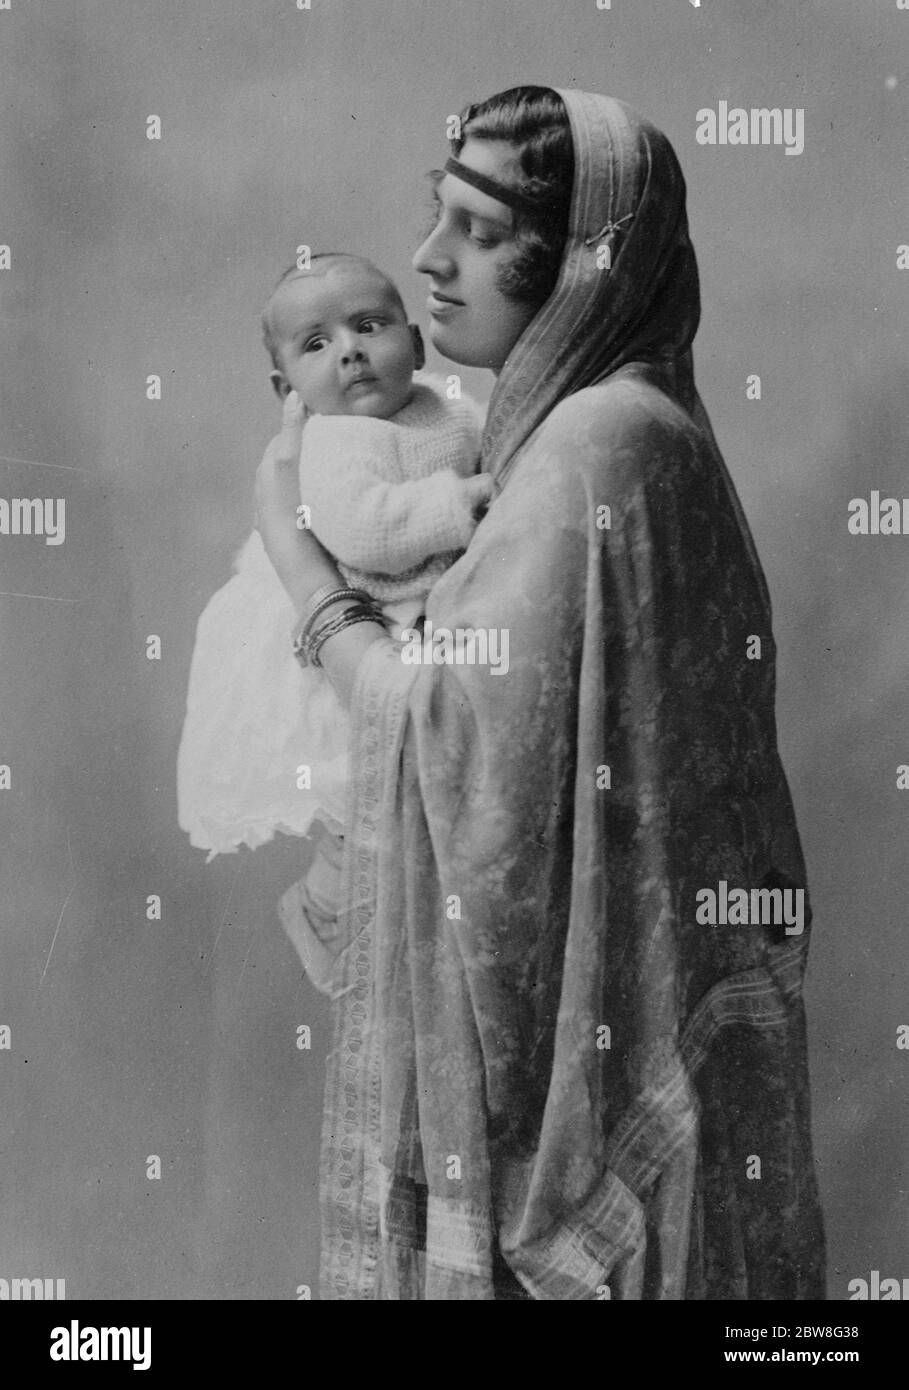 La seule Dame indienne participant à la conférence de presse impériale . Mme K C Roy , épouse de M. K C Roy , C I E , députée , qui est la seule femme indienne à assister à la Conférence de presse impériale de Londres , est ici vue avec son fils . 20 juin 1930 Banque D'Images